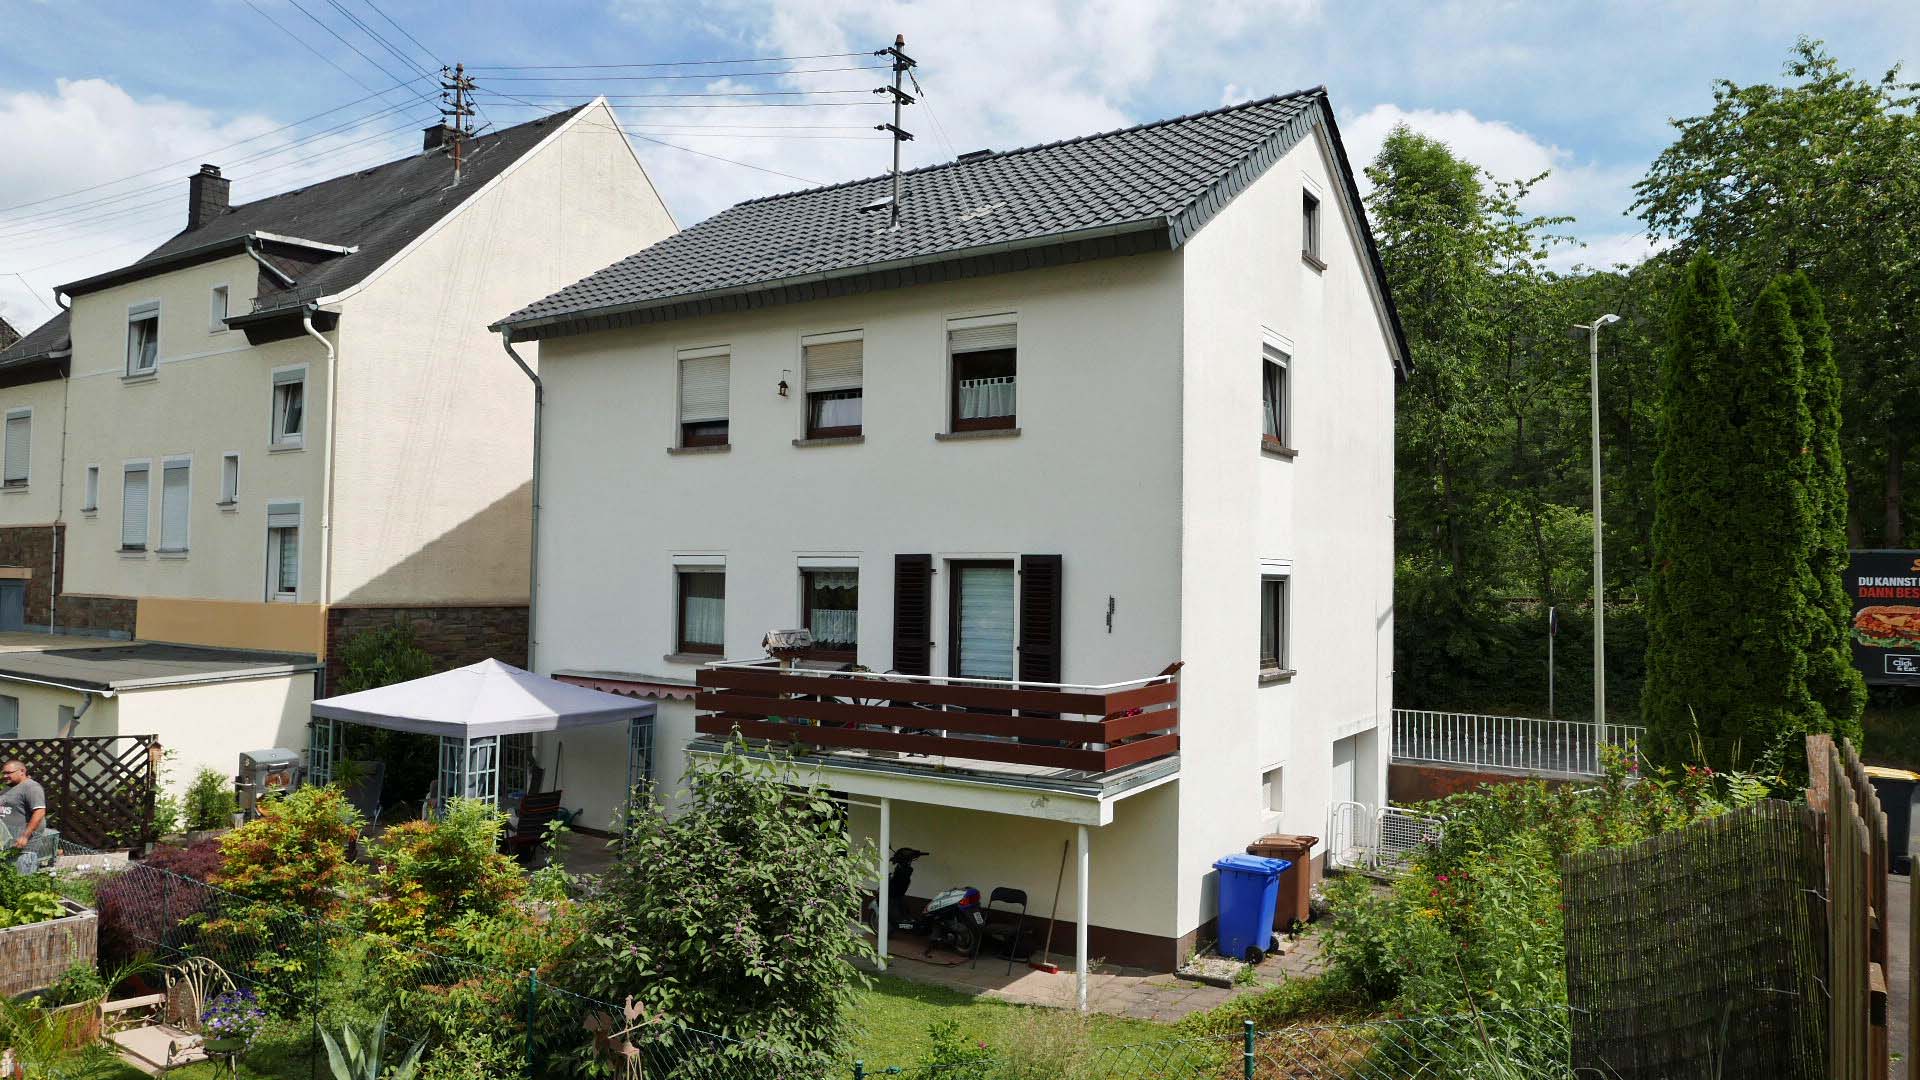 Betzdorf: Zweifamilienhaus in guter, zentraler Wohnlage, neues Dach, inkl Dämmung 2012